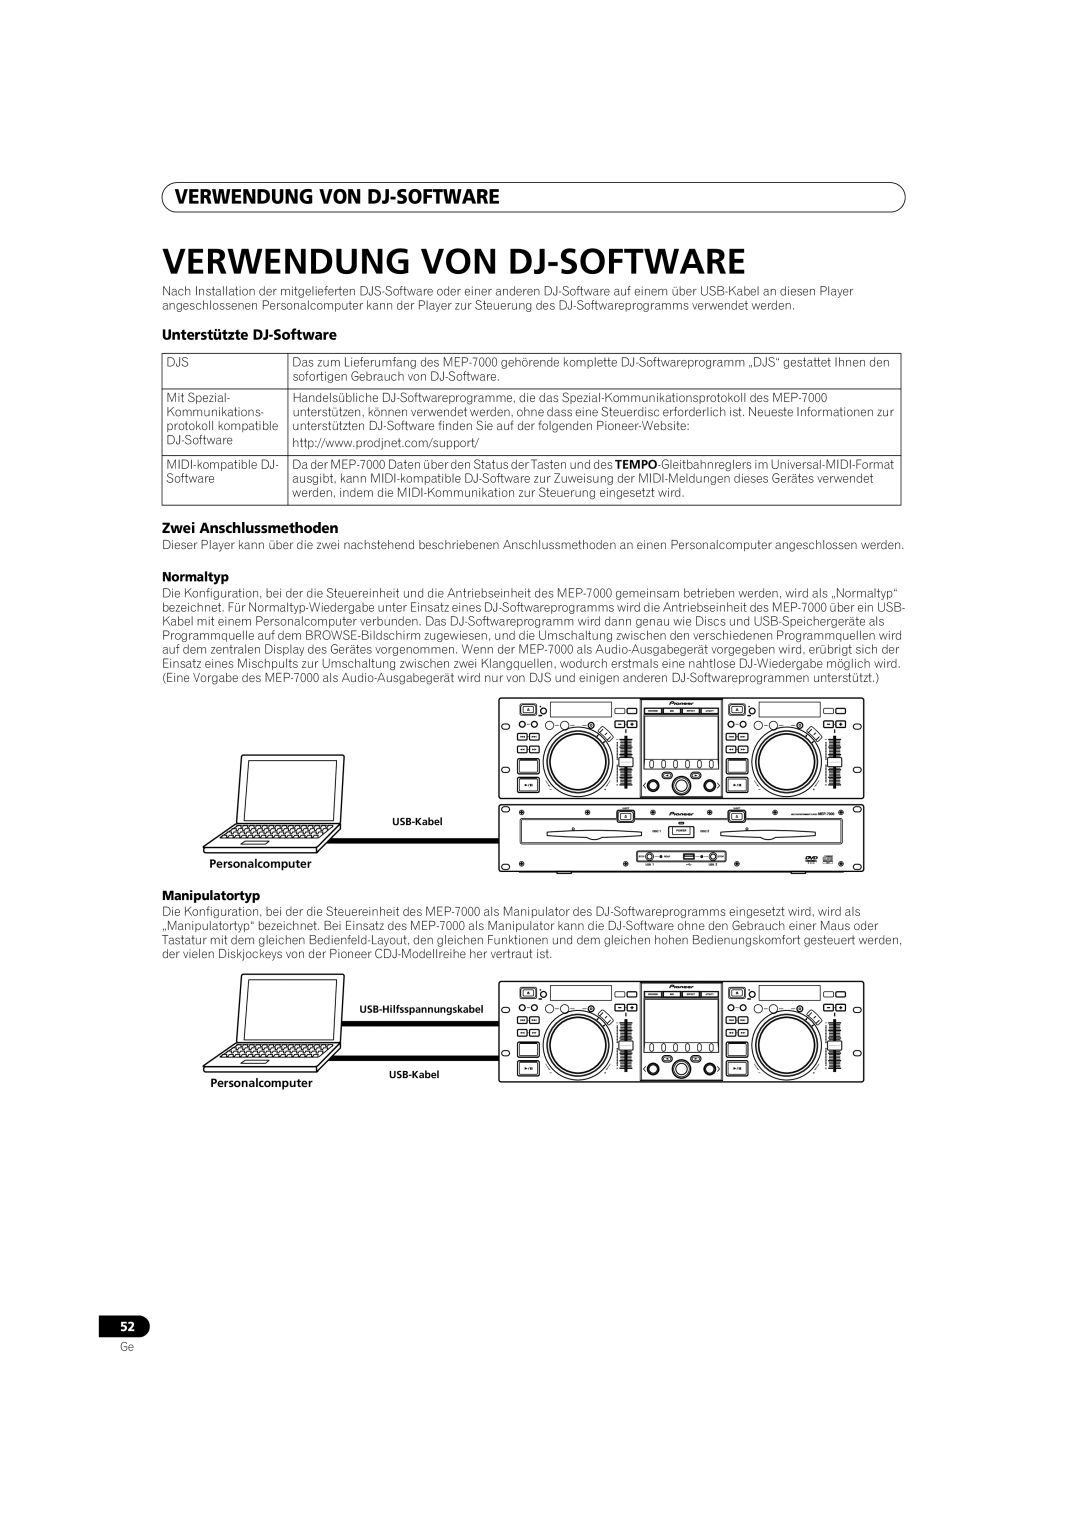 Pioneer MEP-7000 operating instructions Verwendung Von Dj-Software, Normaltyp, Manipulatortyp 